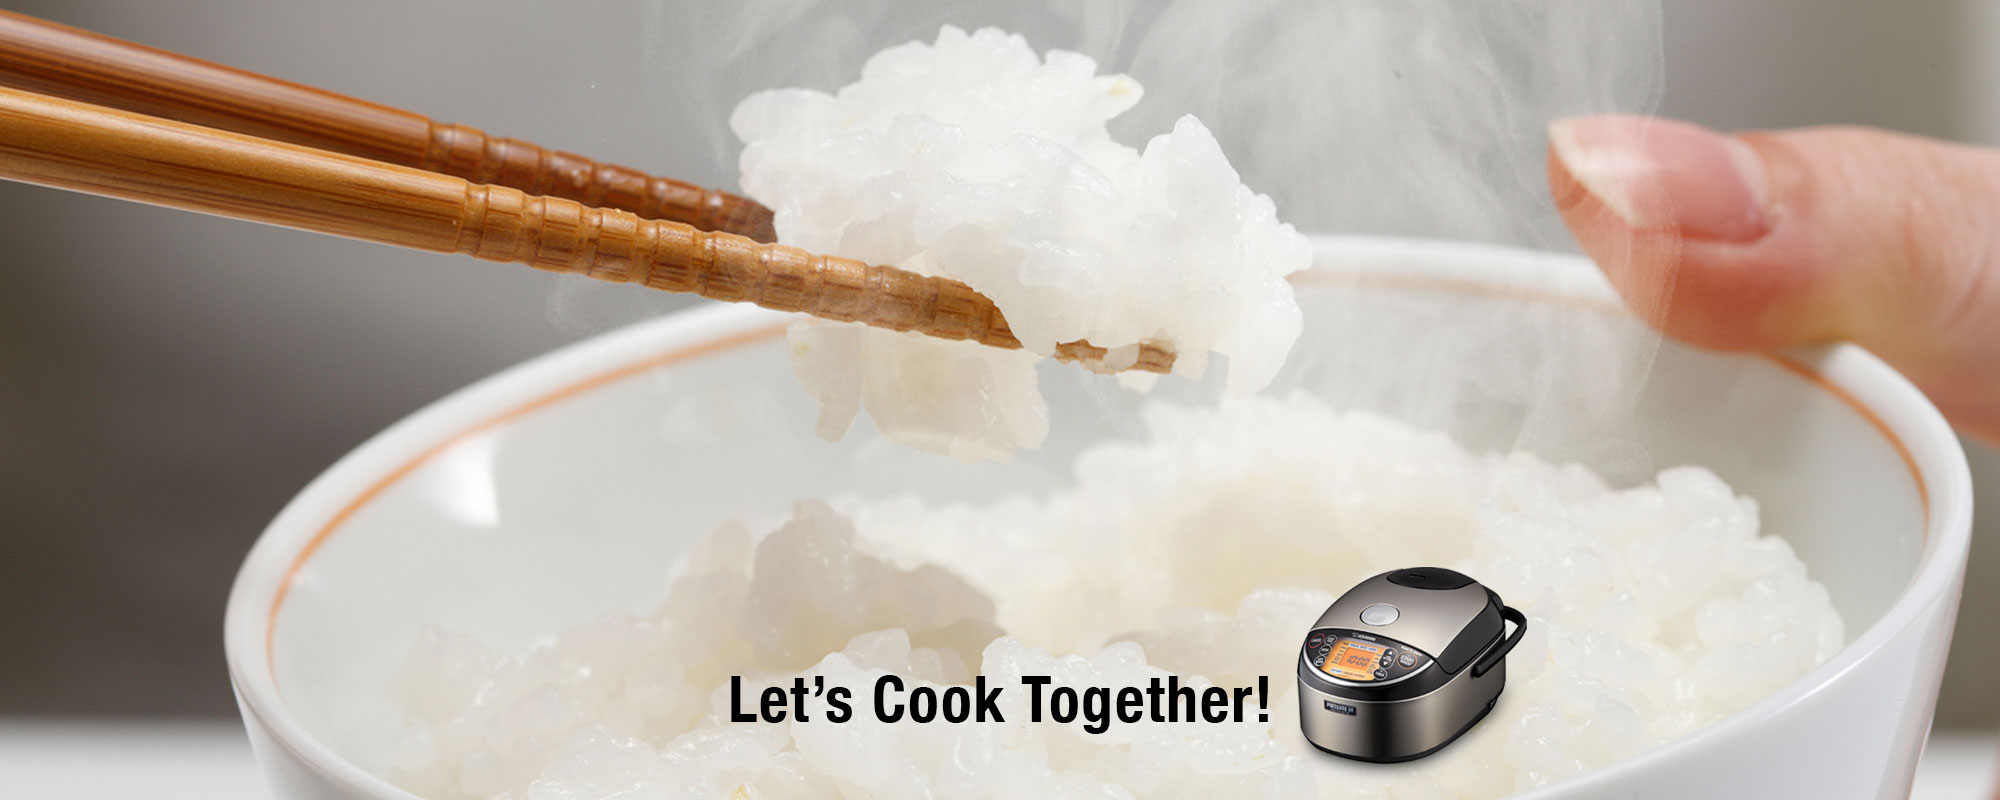 Let's Cook Together!